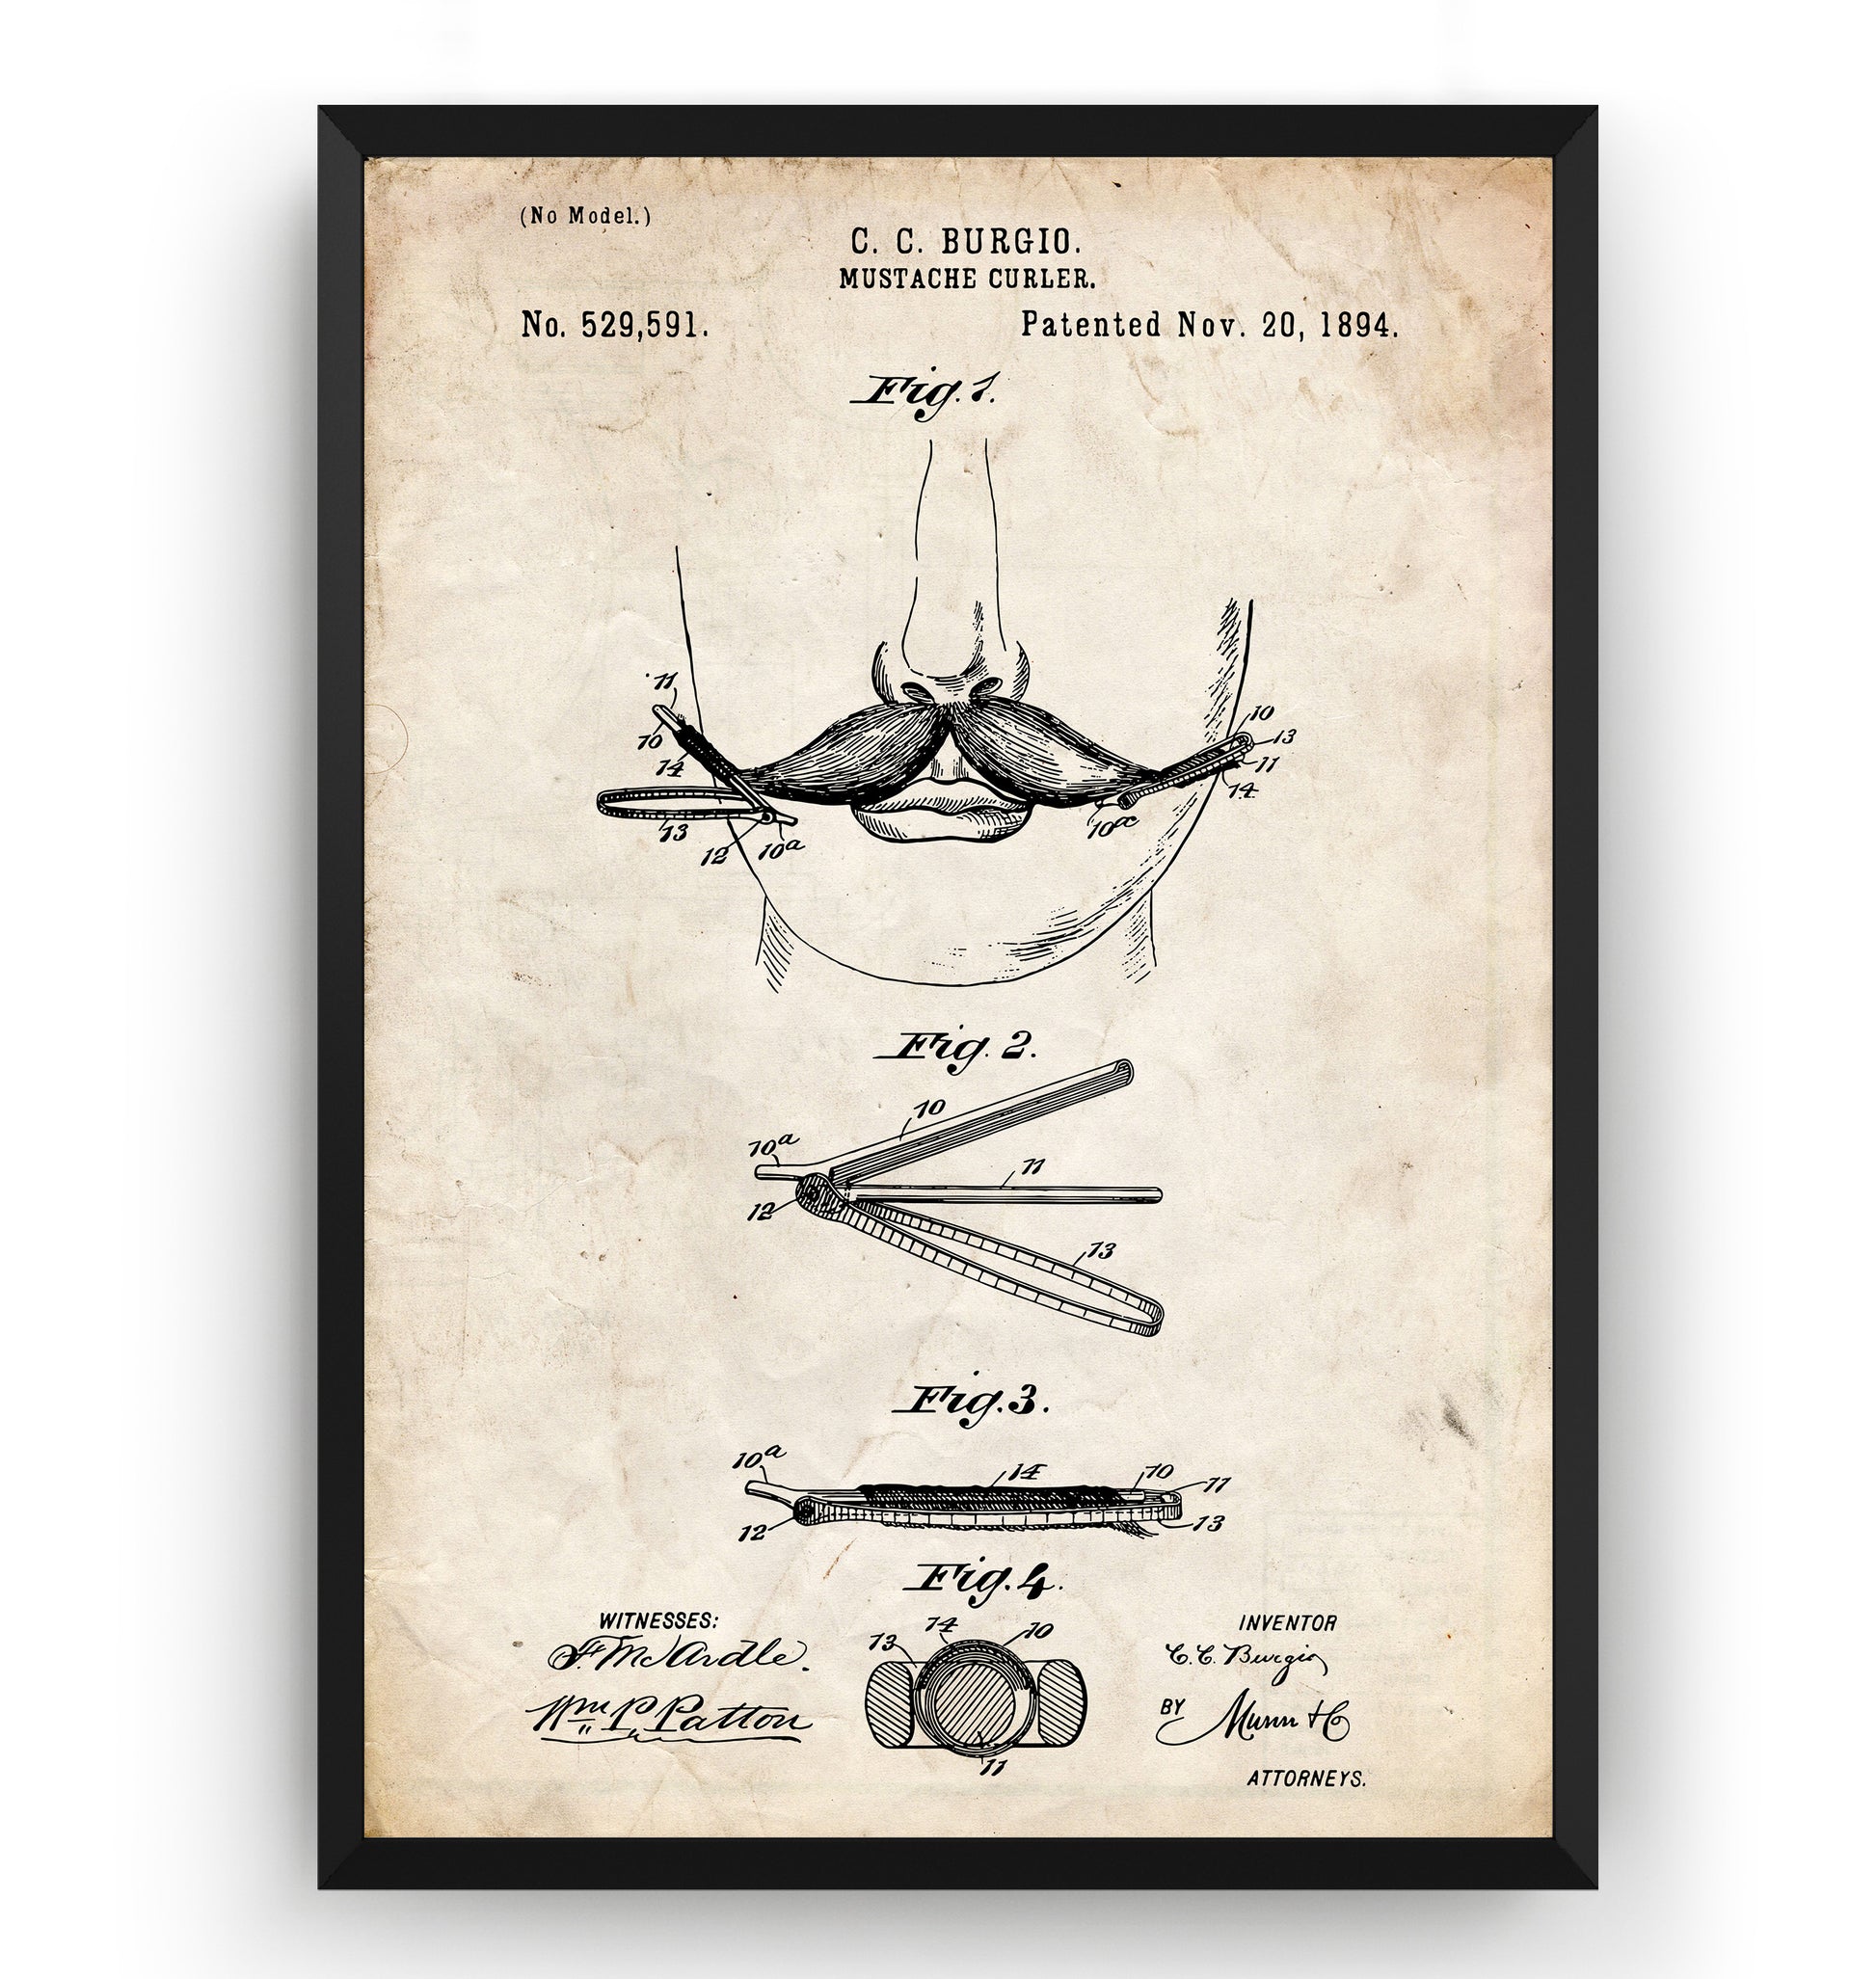 Moustache Curler 1894 Patent Print - Magic Posters